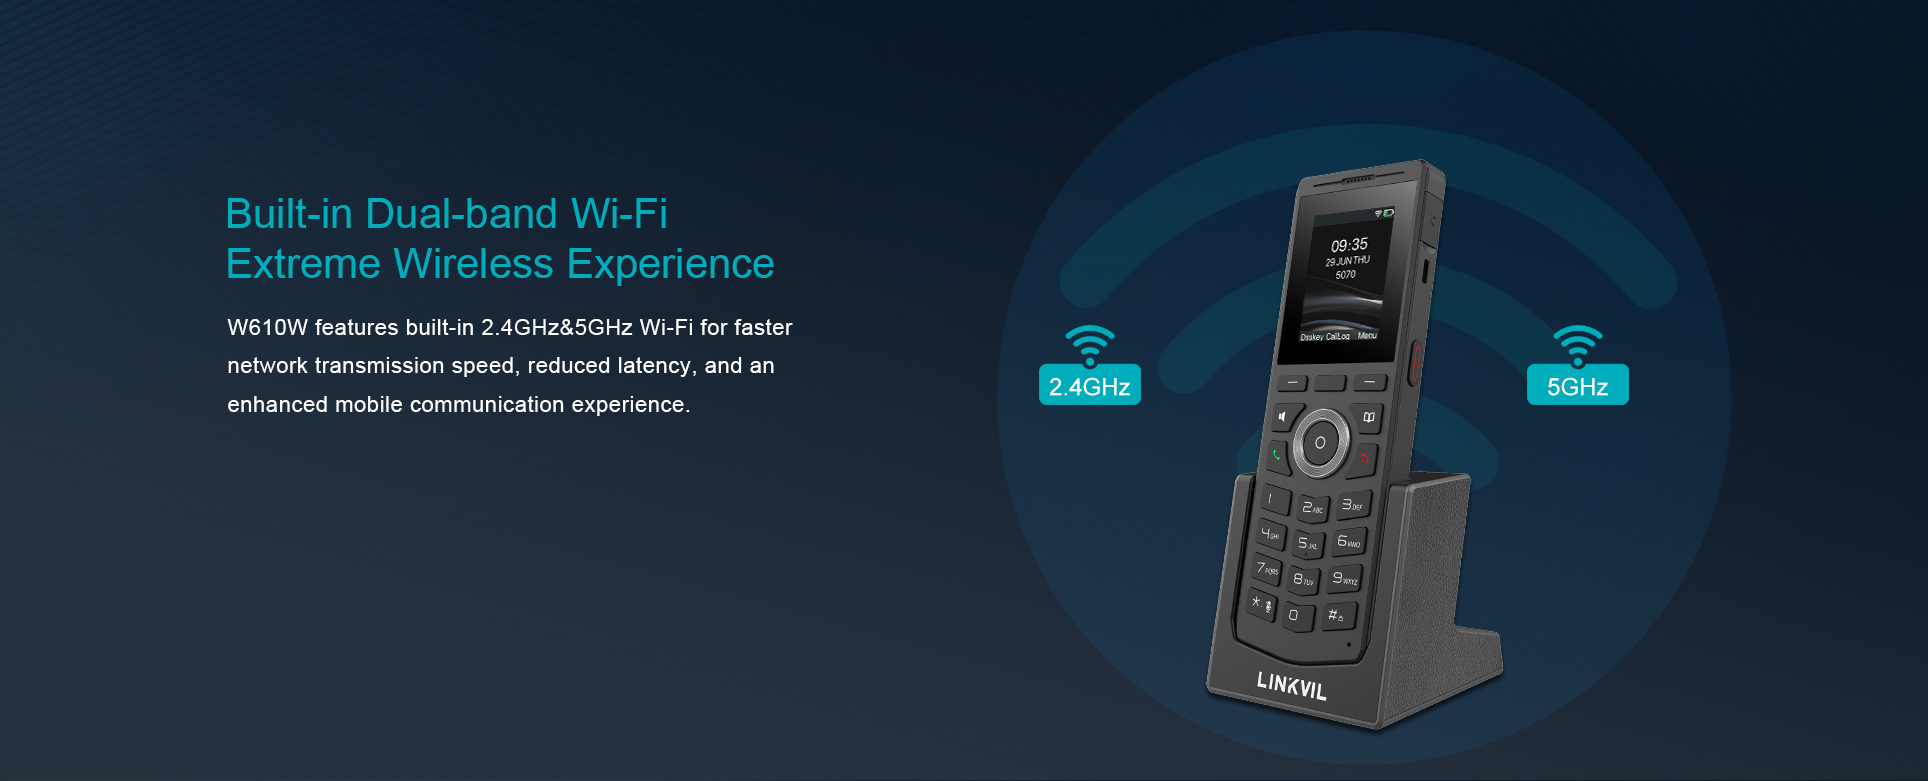 LINKVIL W610W ist ein tragbares, stilvolles WLAN-Telefon, das für den Einsatz in der mobile Kommunikation konzipiert wurde. Dank integriertem Dual-Band 2,4GHz & 5GHz Wi-Fi